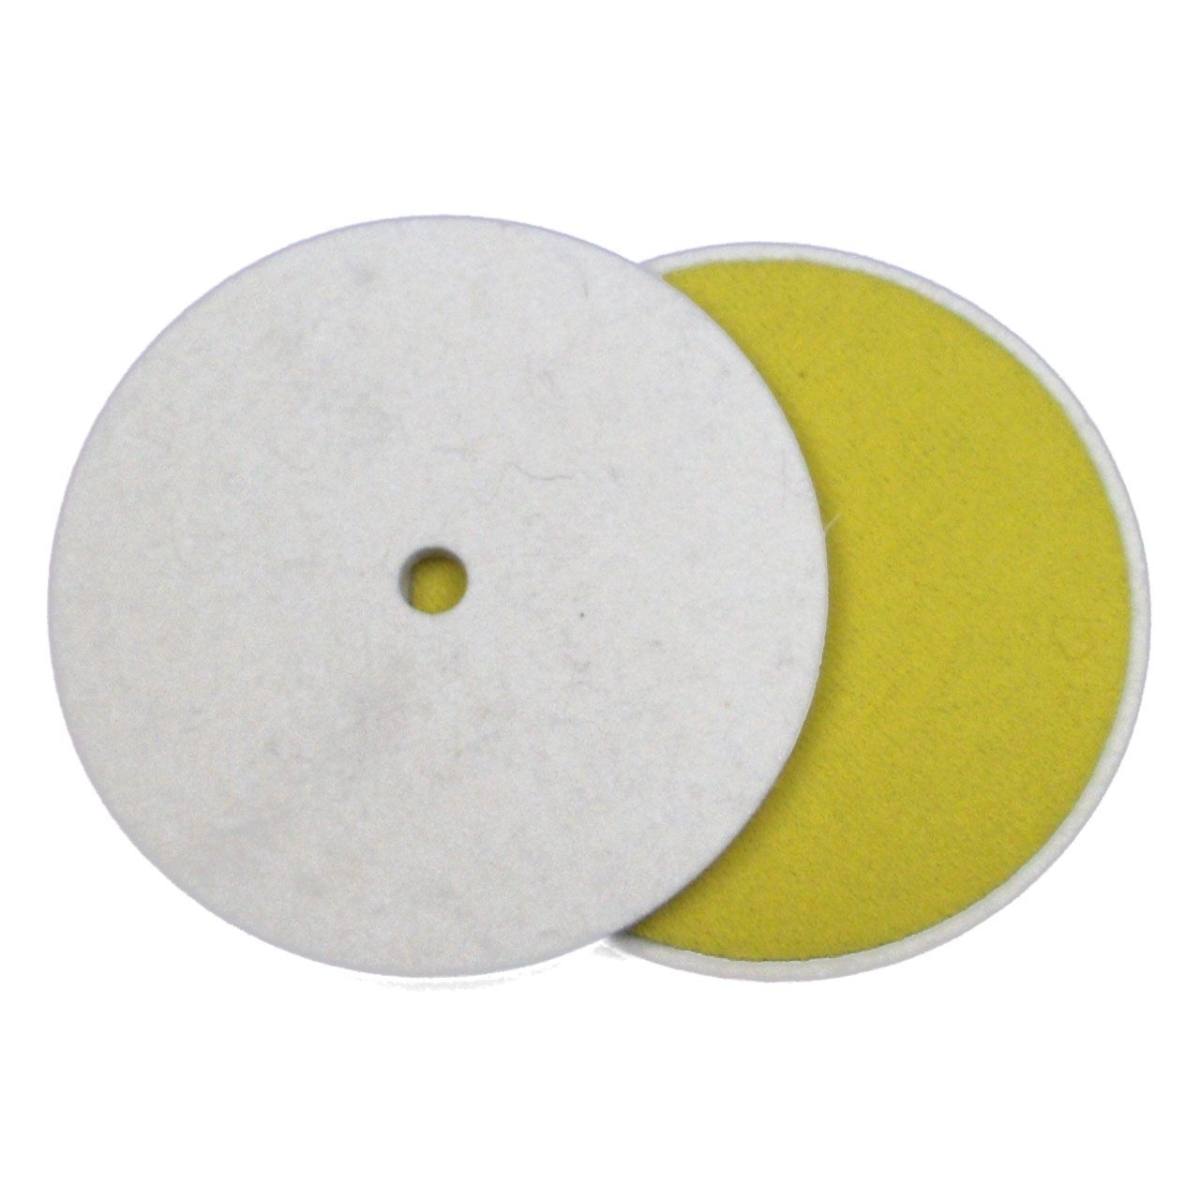 FIX KLETT felt disc, 100 mm x 10 mm, Merino, Velcro